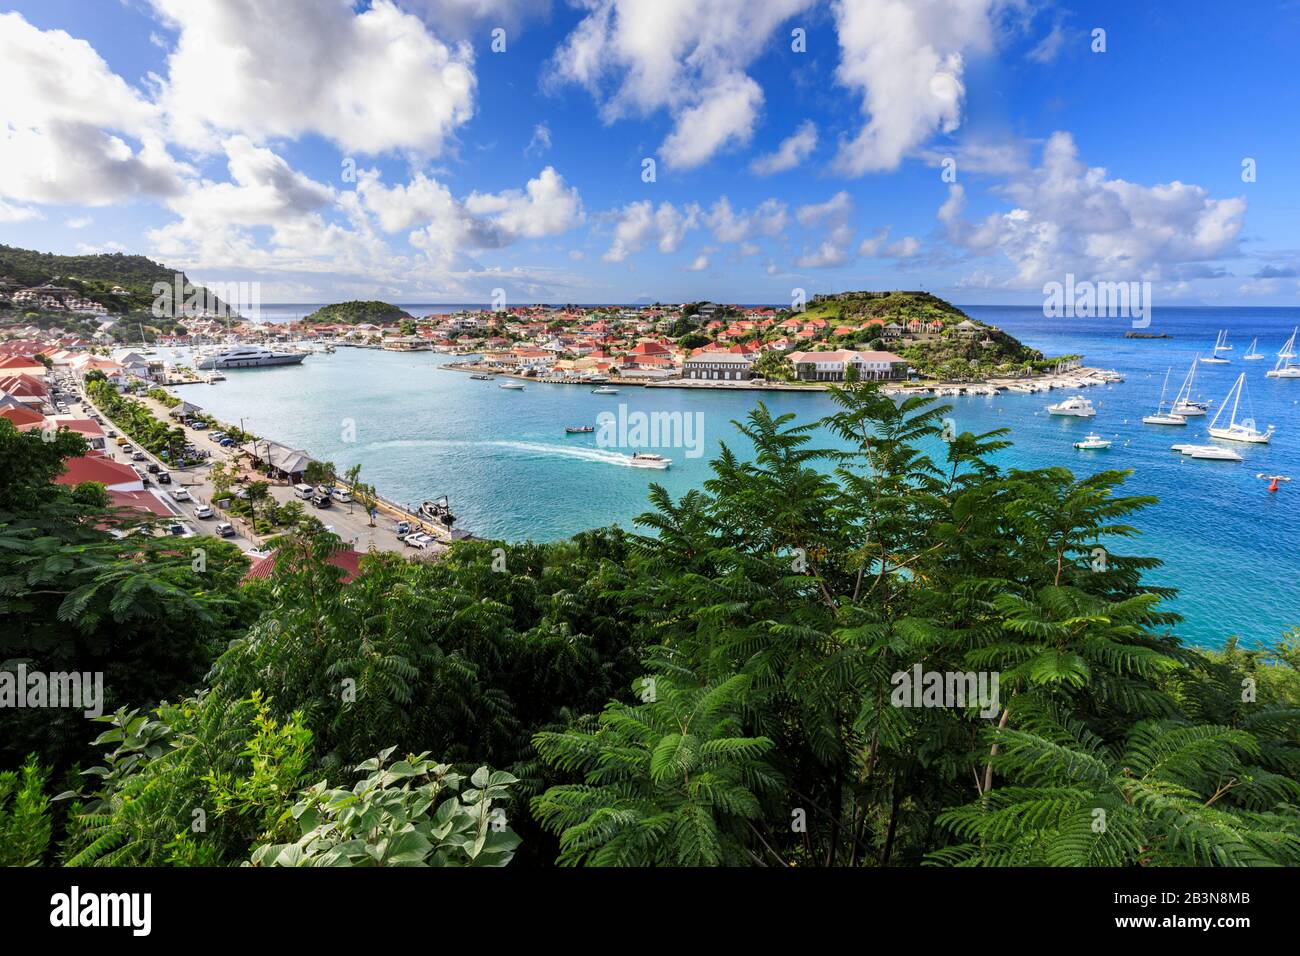 Vista elevada sobre el bonito puerto y la ciudad de Gustavia y hacia el mar, Gustavia, St. Barthelemy (St Barts) (St. Barth), Indias Occidentales, Caribe, Central Foto de stock